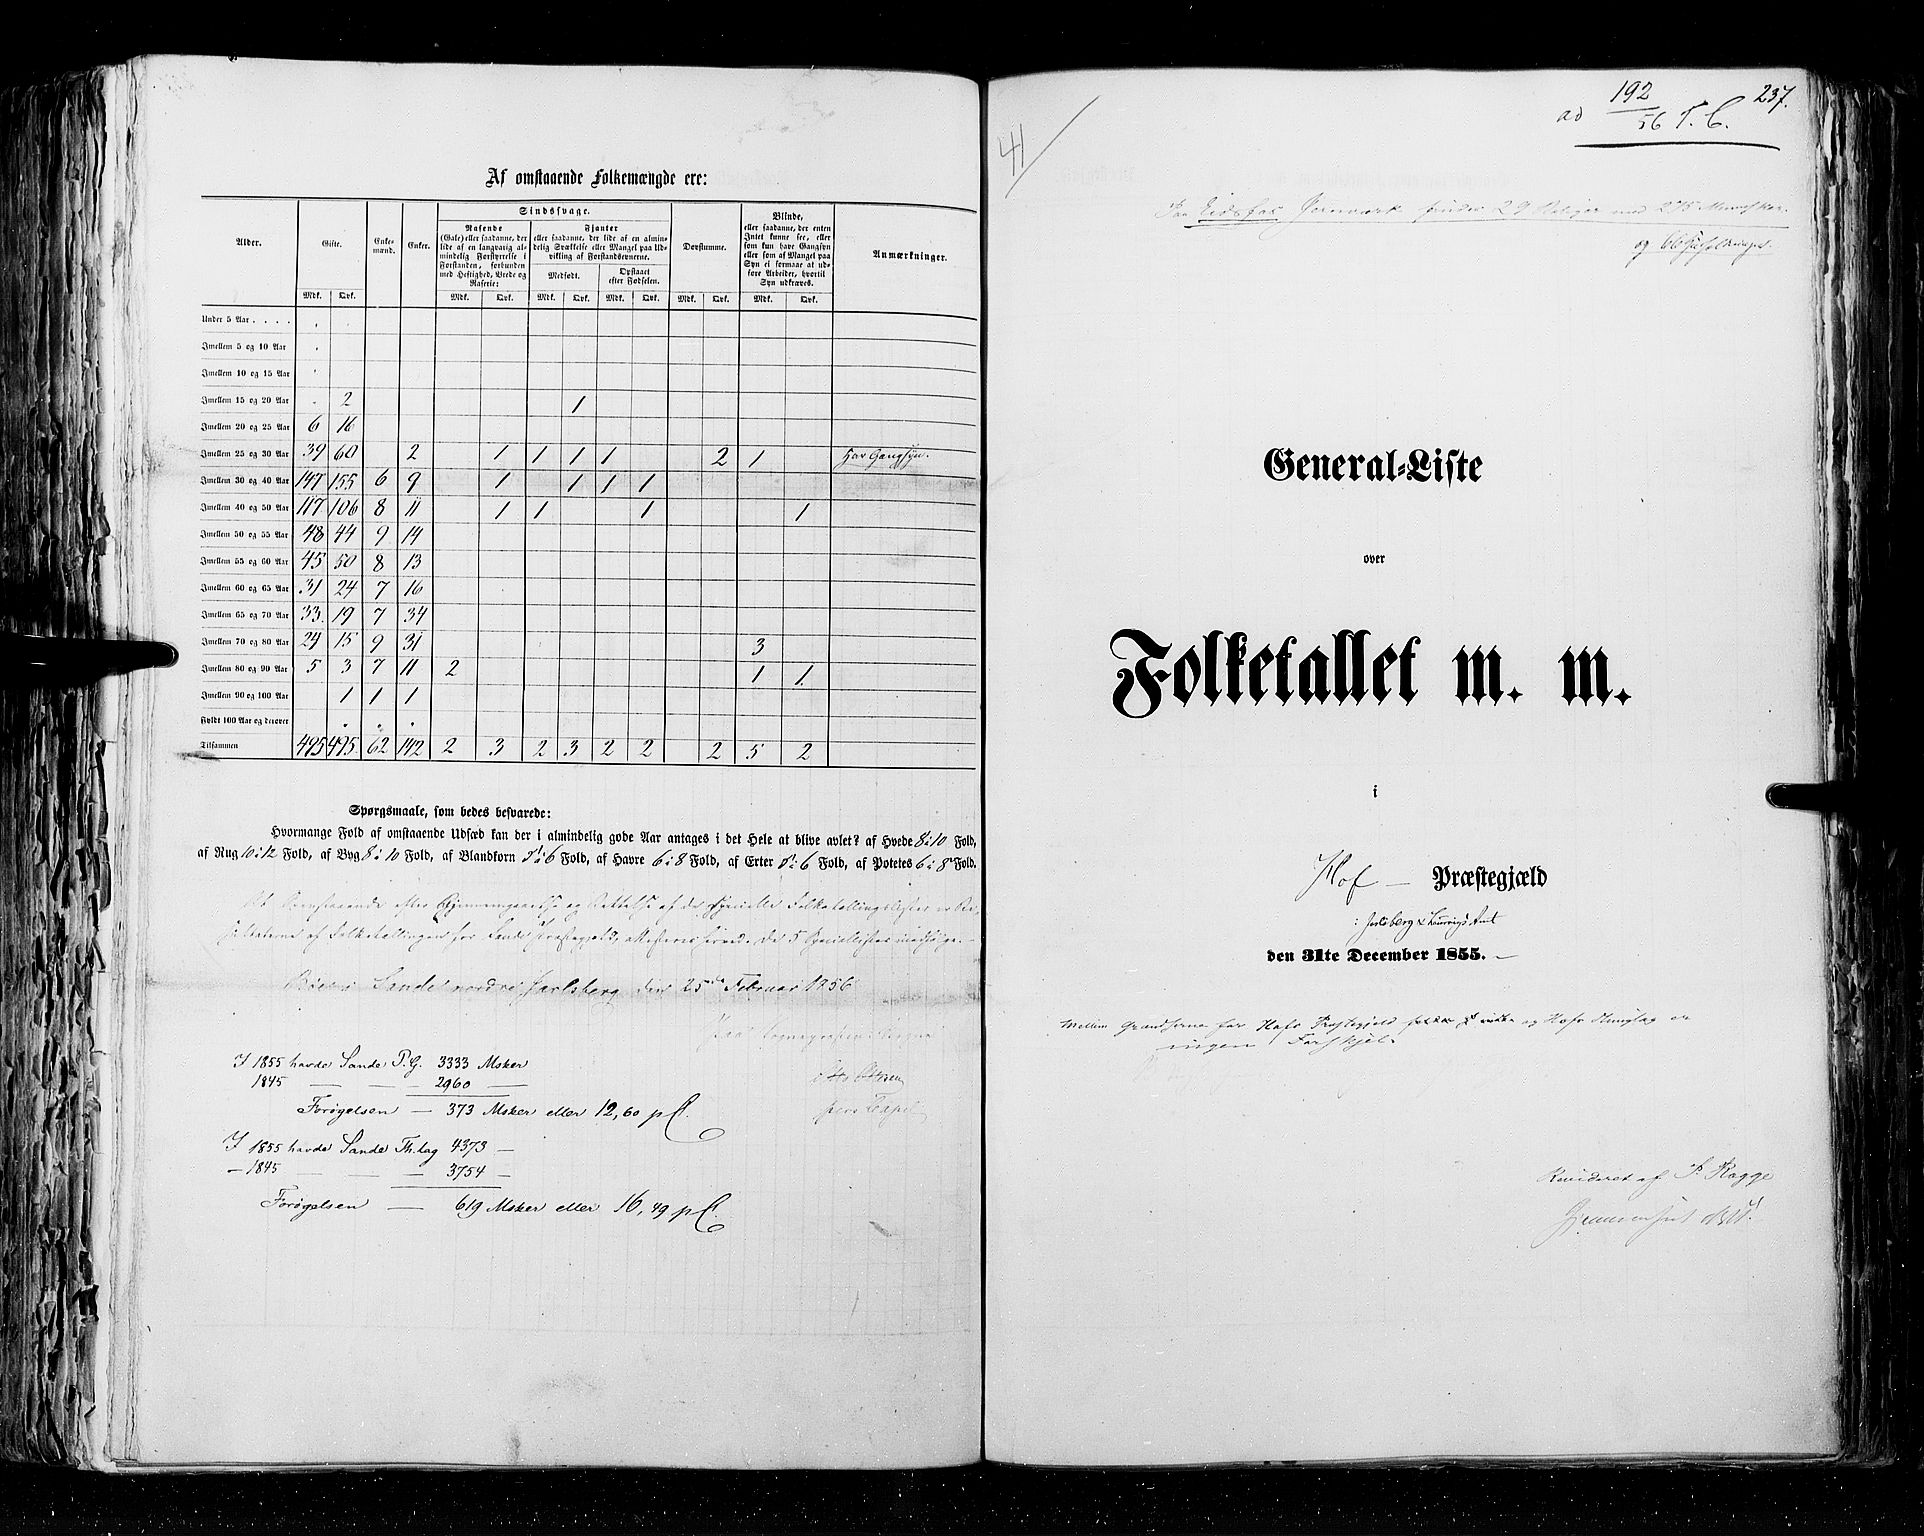 RA, Folketellingen 1855, bind 2: Kristians amt, Buskerud amt og Jarlsberg og Larvik amt, 1855, s. 237